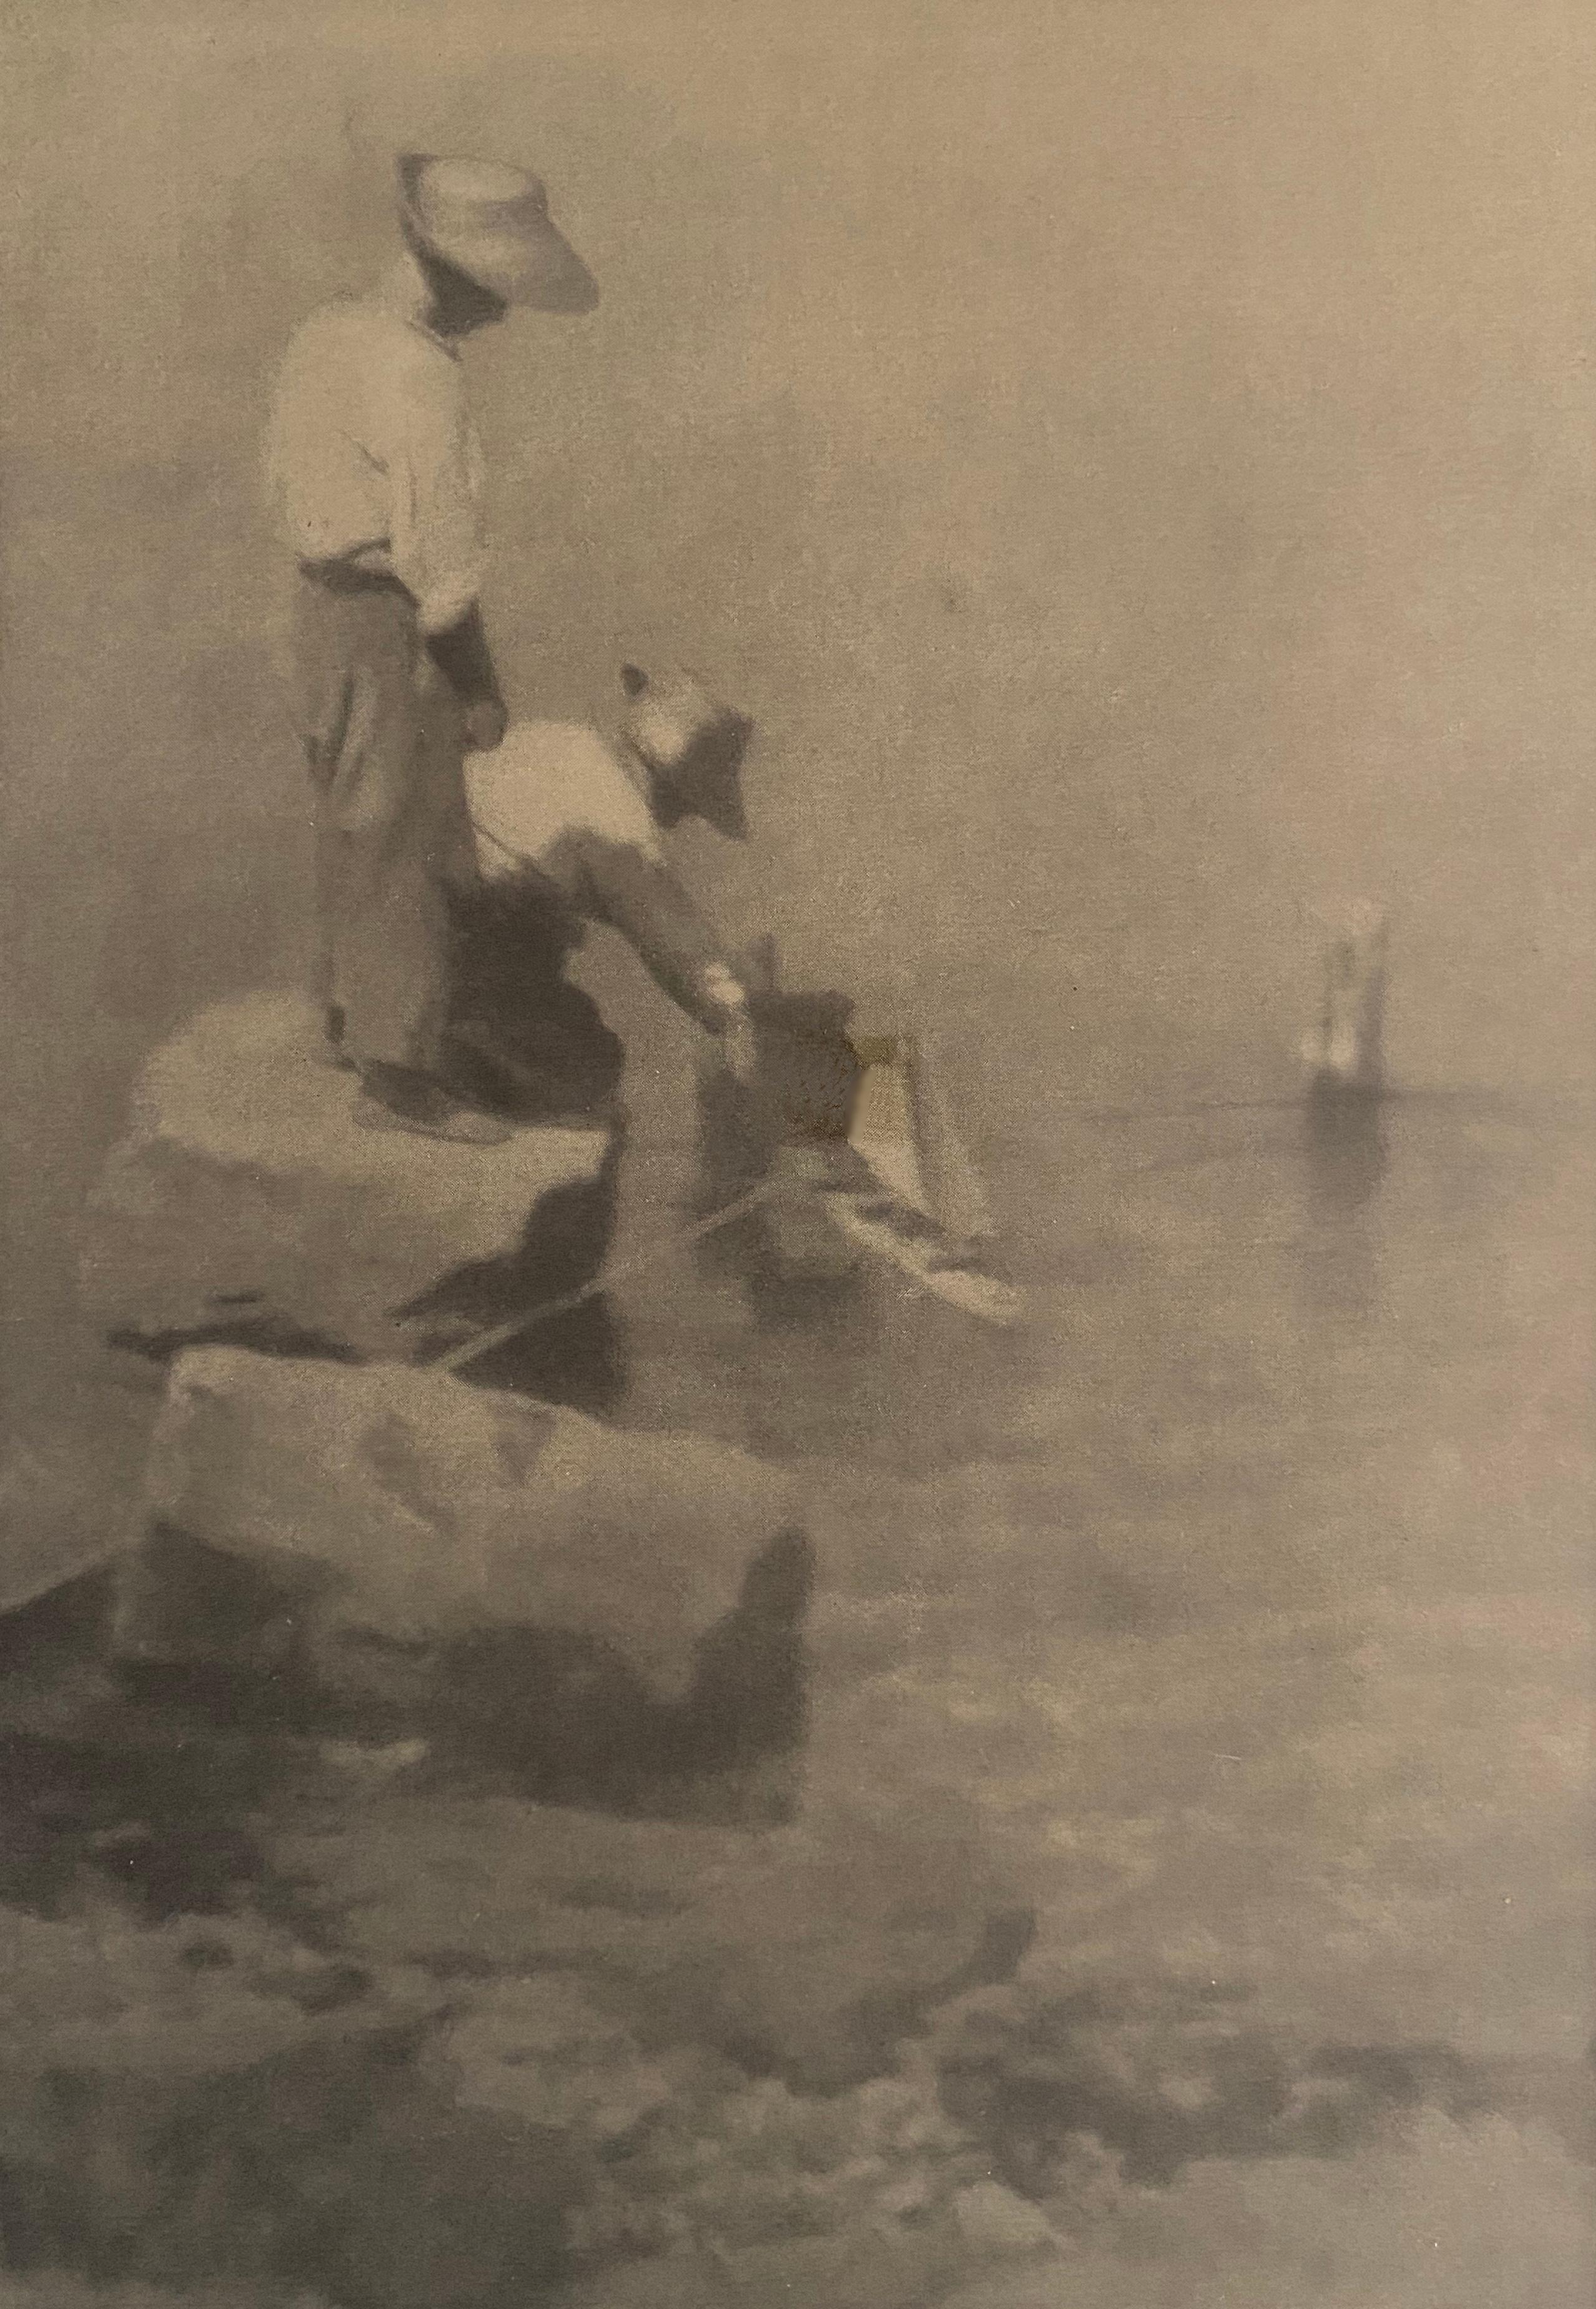 Segelboote (Edeltrude und Walter mit Segelbooten) – Photograph von Heinrich Kuhn